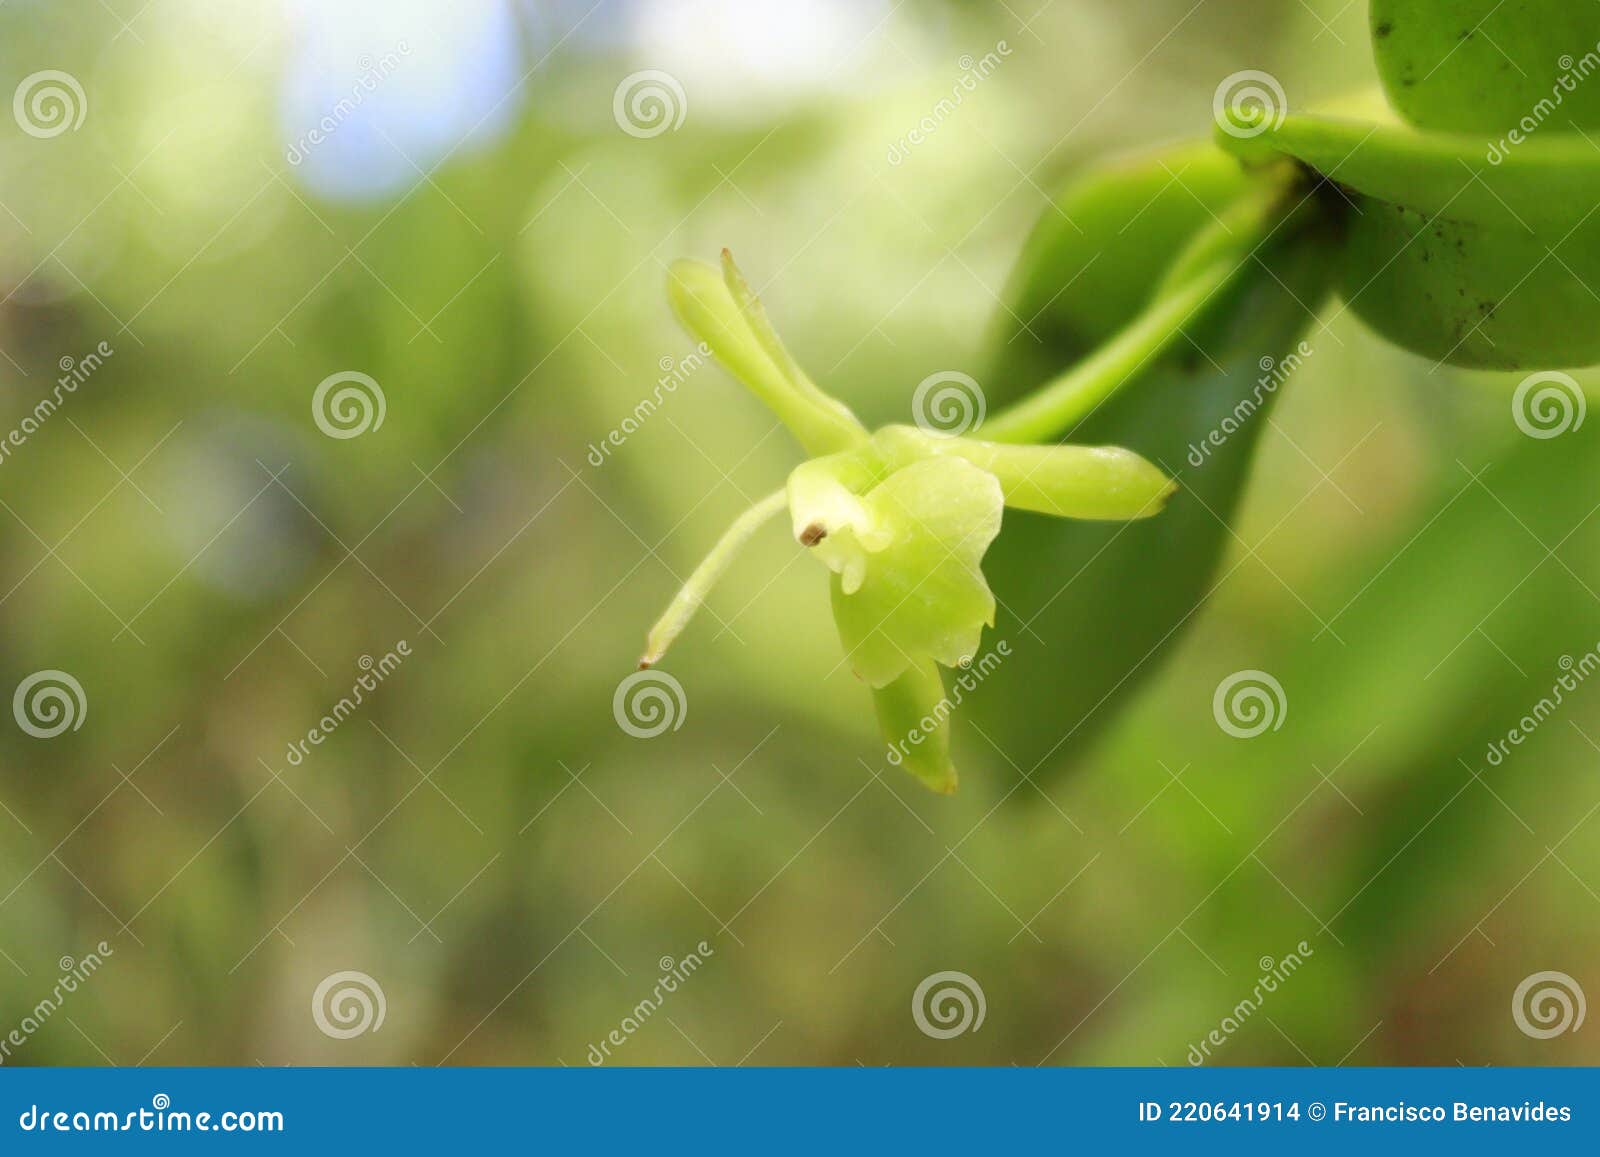 Orquídea rara costa rica foto de archivo. Imagen de hermoso - 220641914